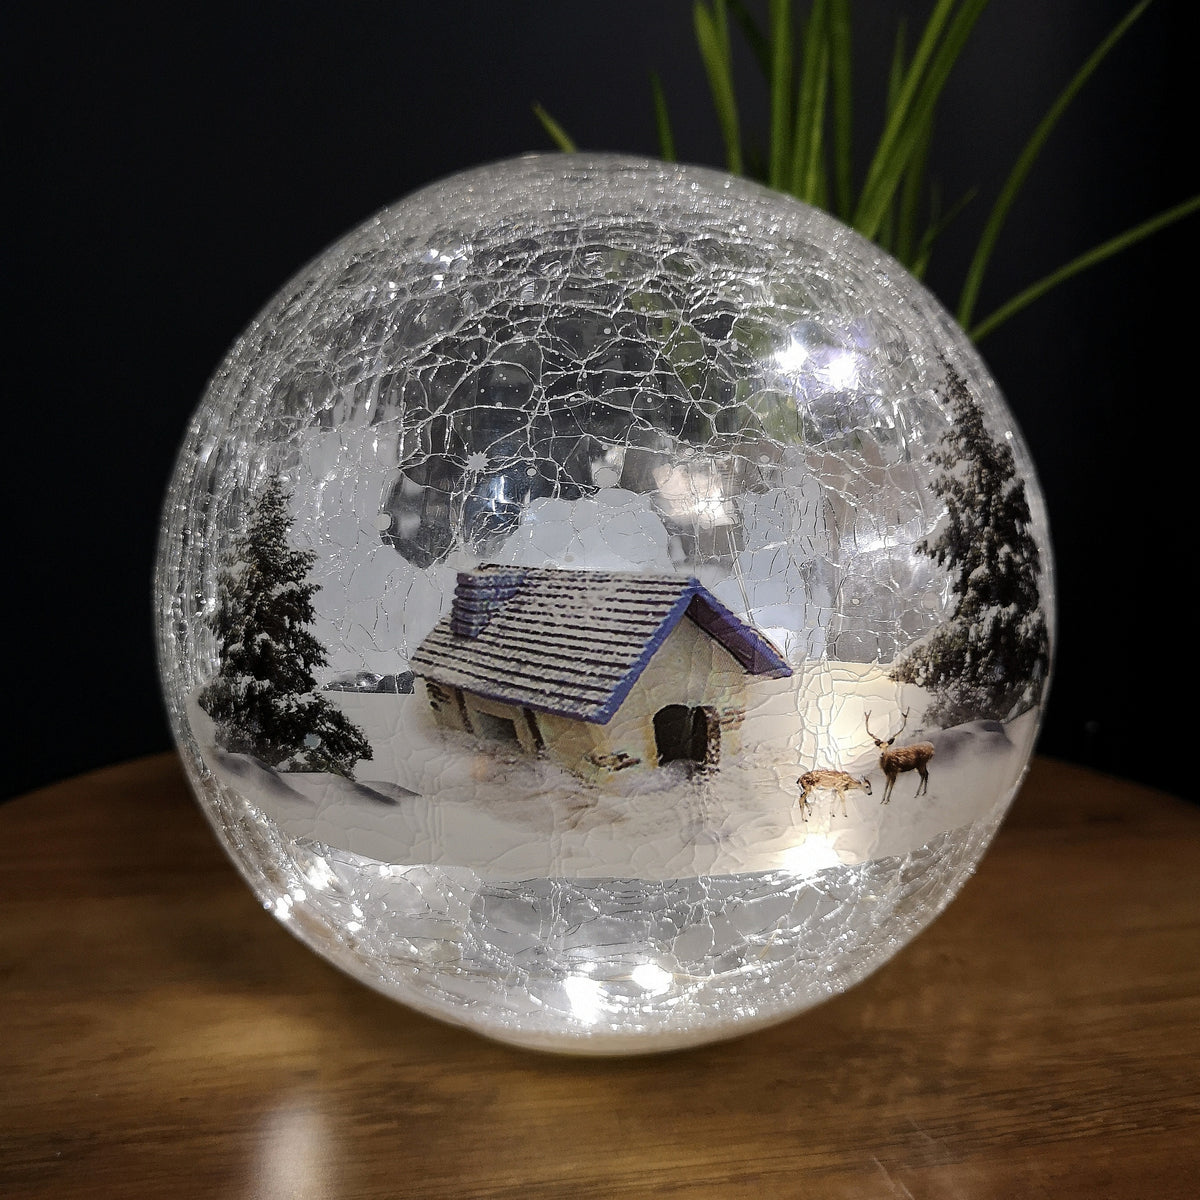 20cm Festive Christmas Crackle Effect Glass Lodge Scene LED Light Ball